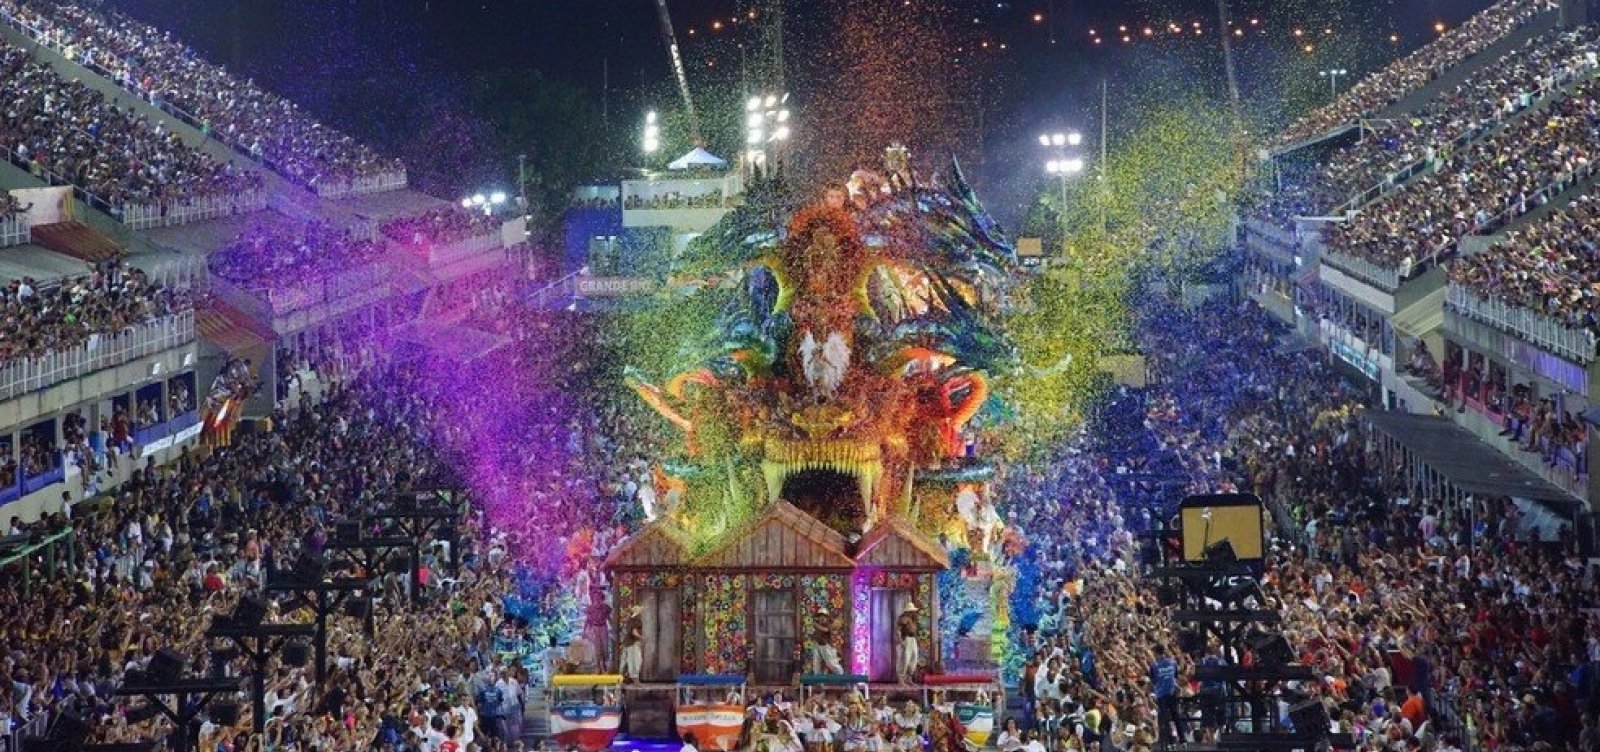 Coronavírus: Desfile de Carnaval do Rio de Janeiro é adiado pela primeira vez desde 1932 